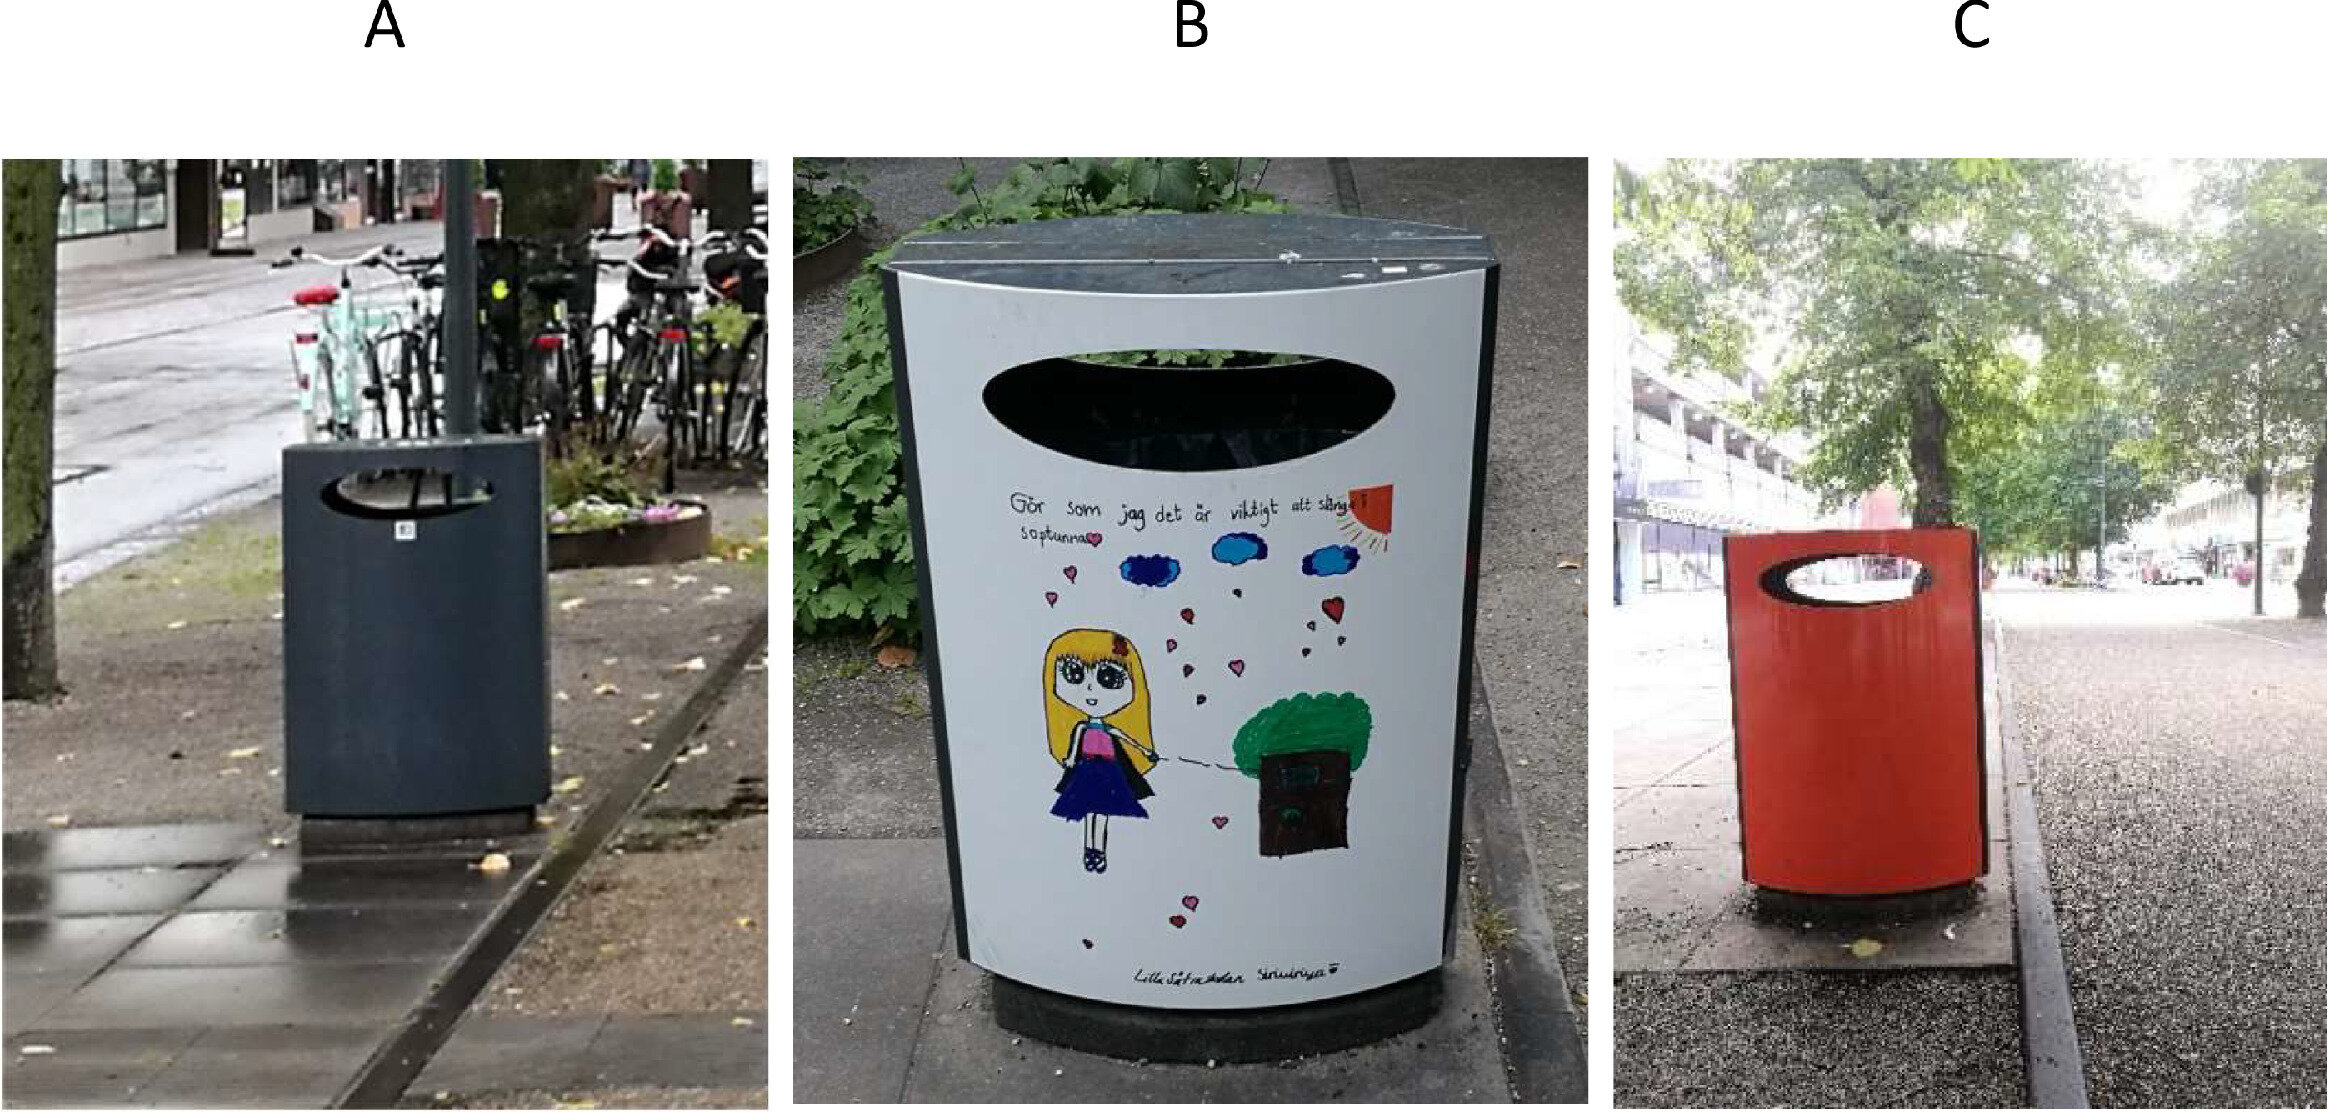 Contenedores de basura diseñados con dibujos infantiles rechazados por los vecinos